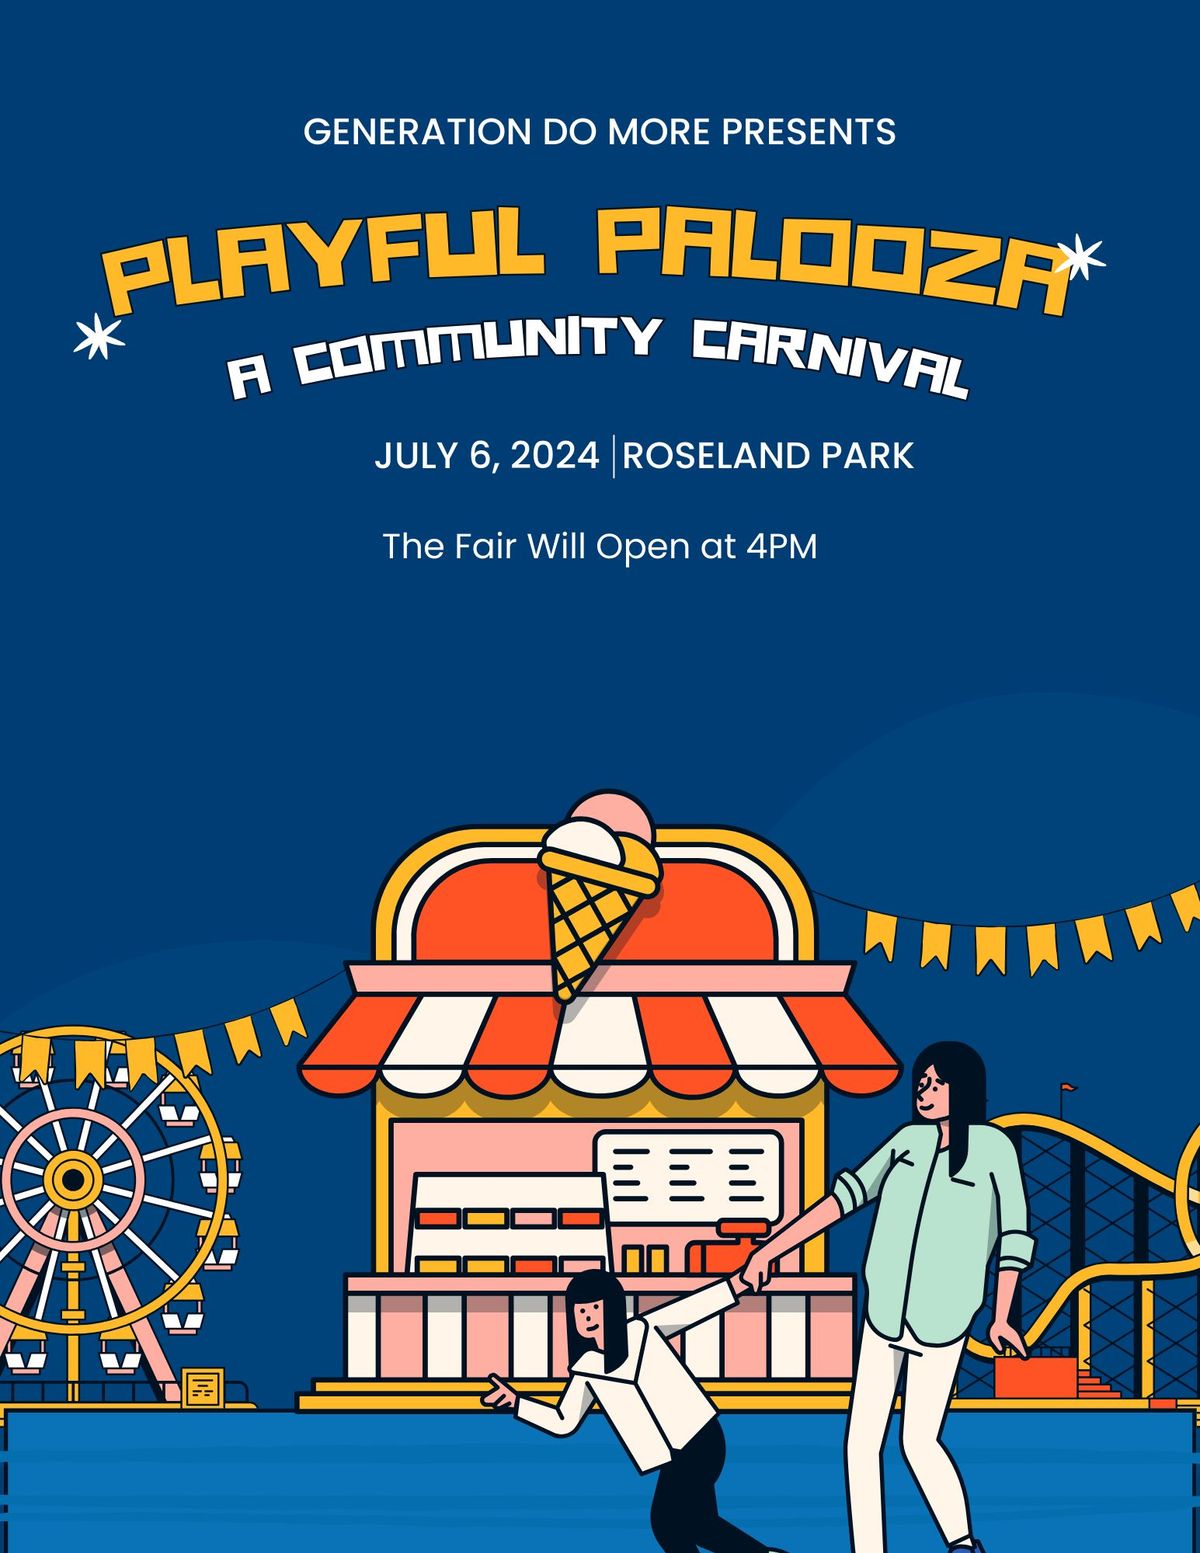 Playful Palooza: A Community Caranival